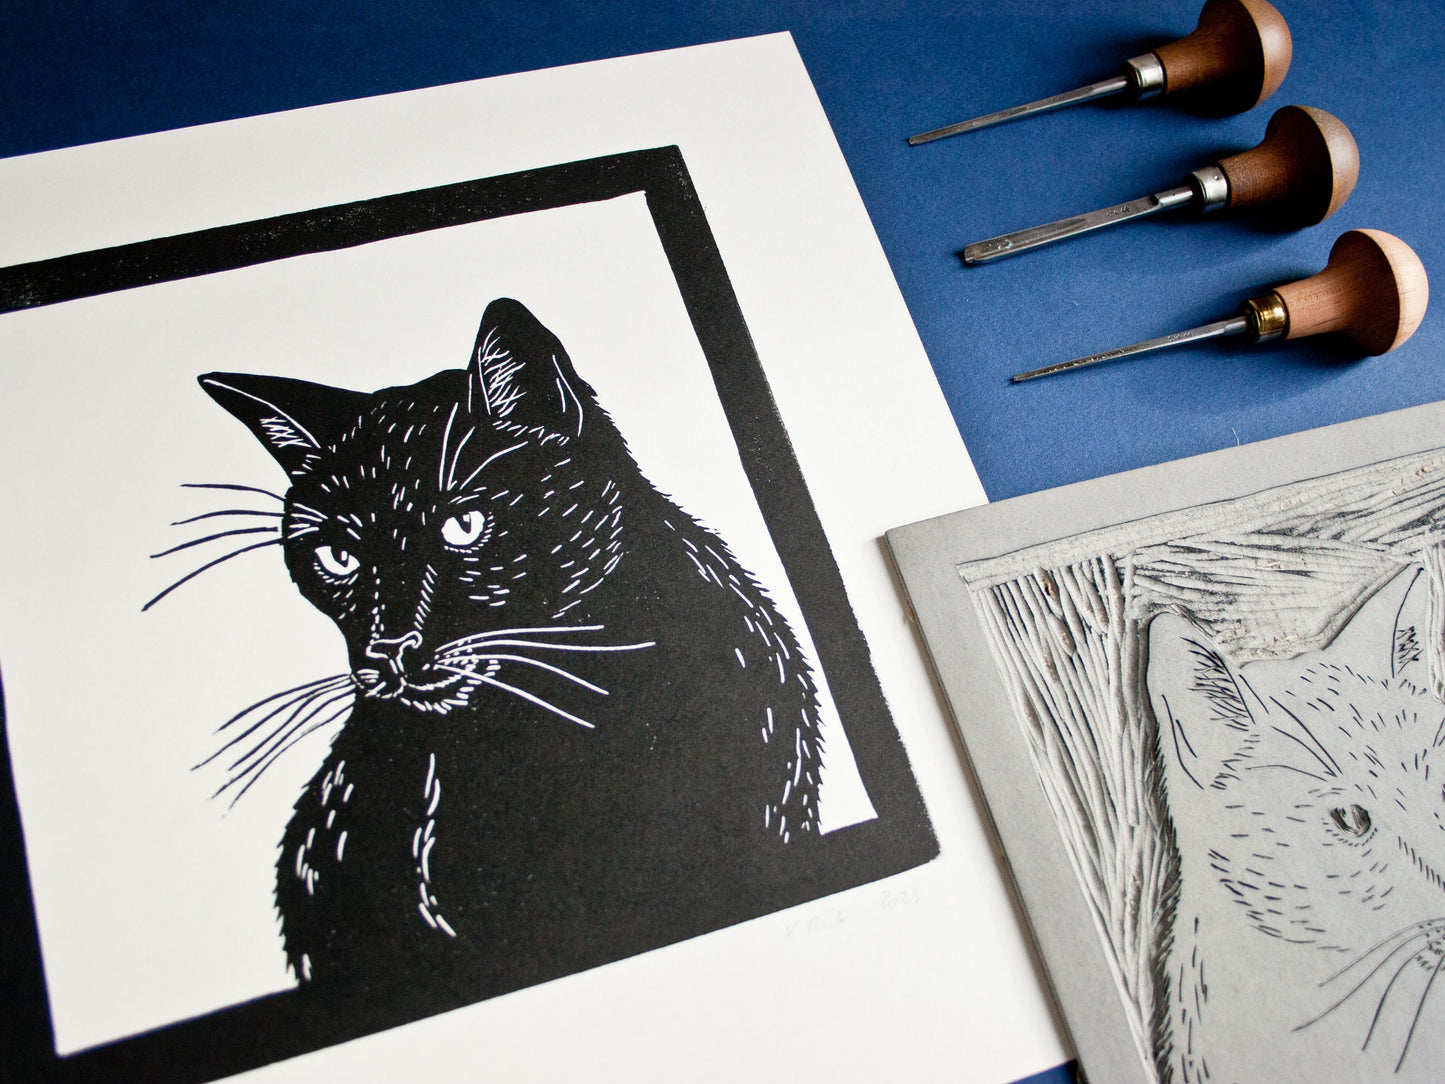 Linoldruck schwarze Katze